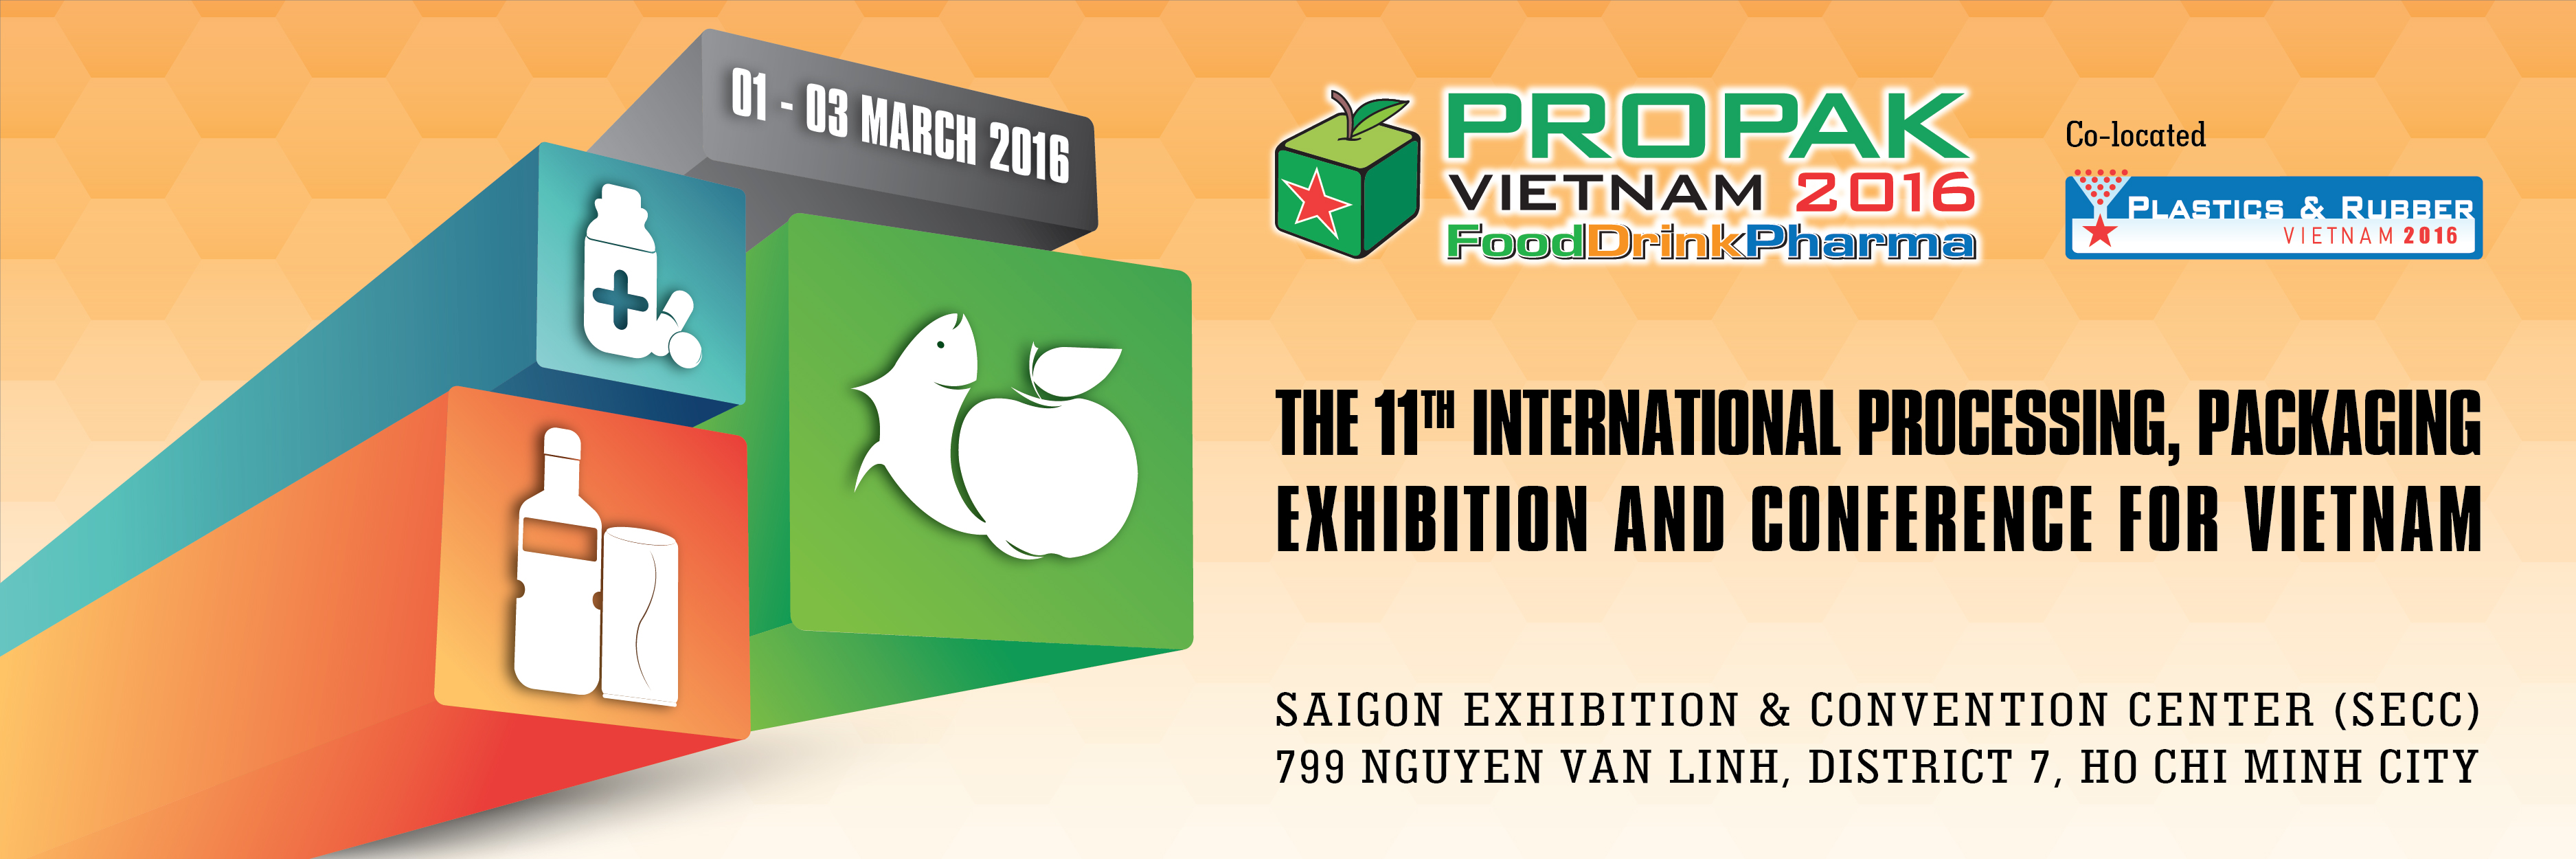 ProPack Vietnam 2016